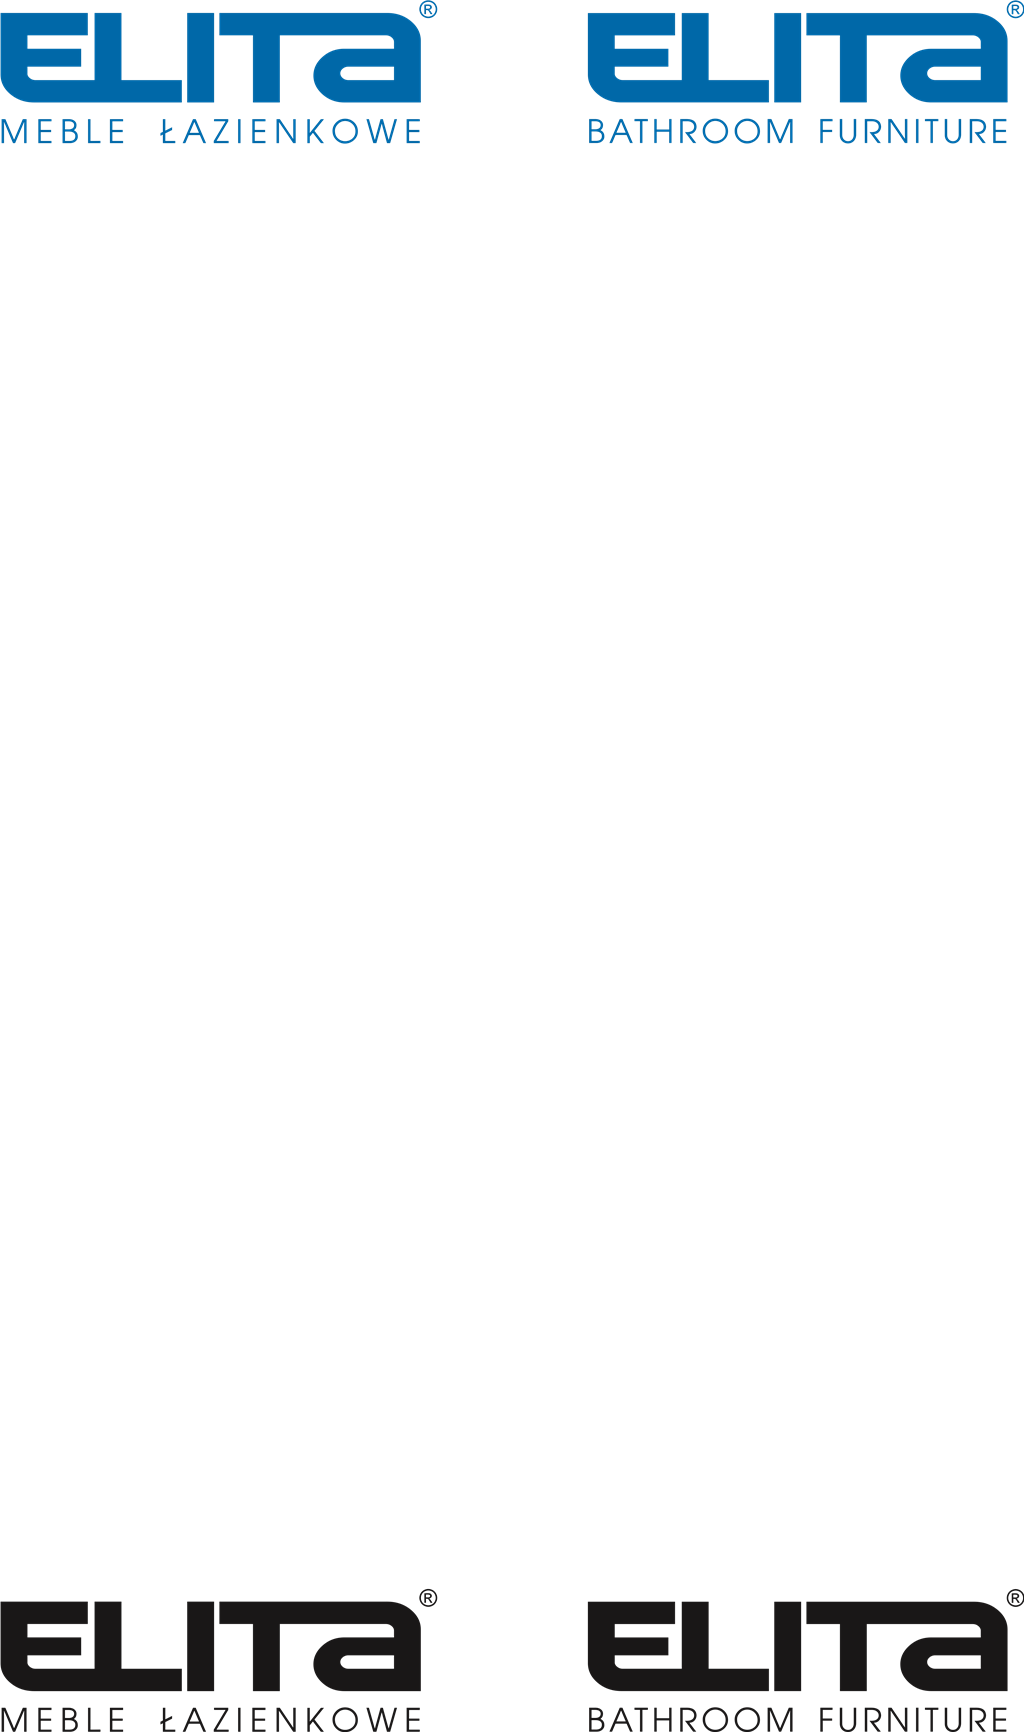 Elita logotype, transparent .png, medium, large